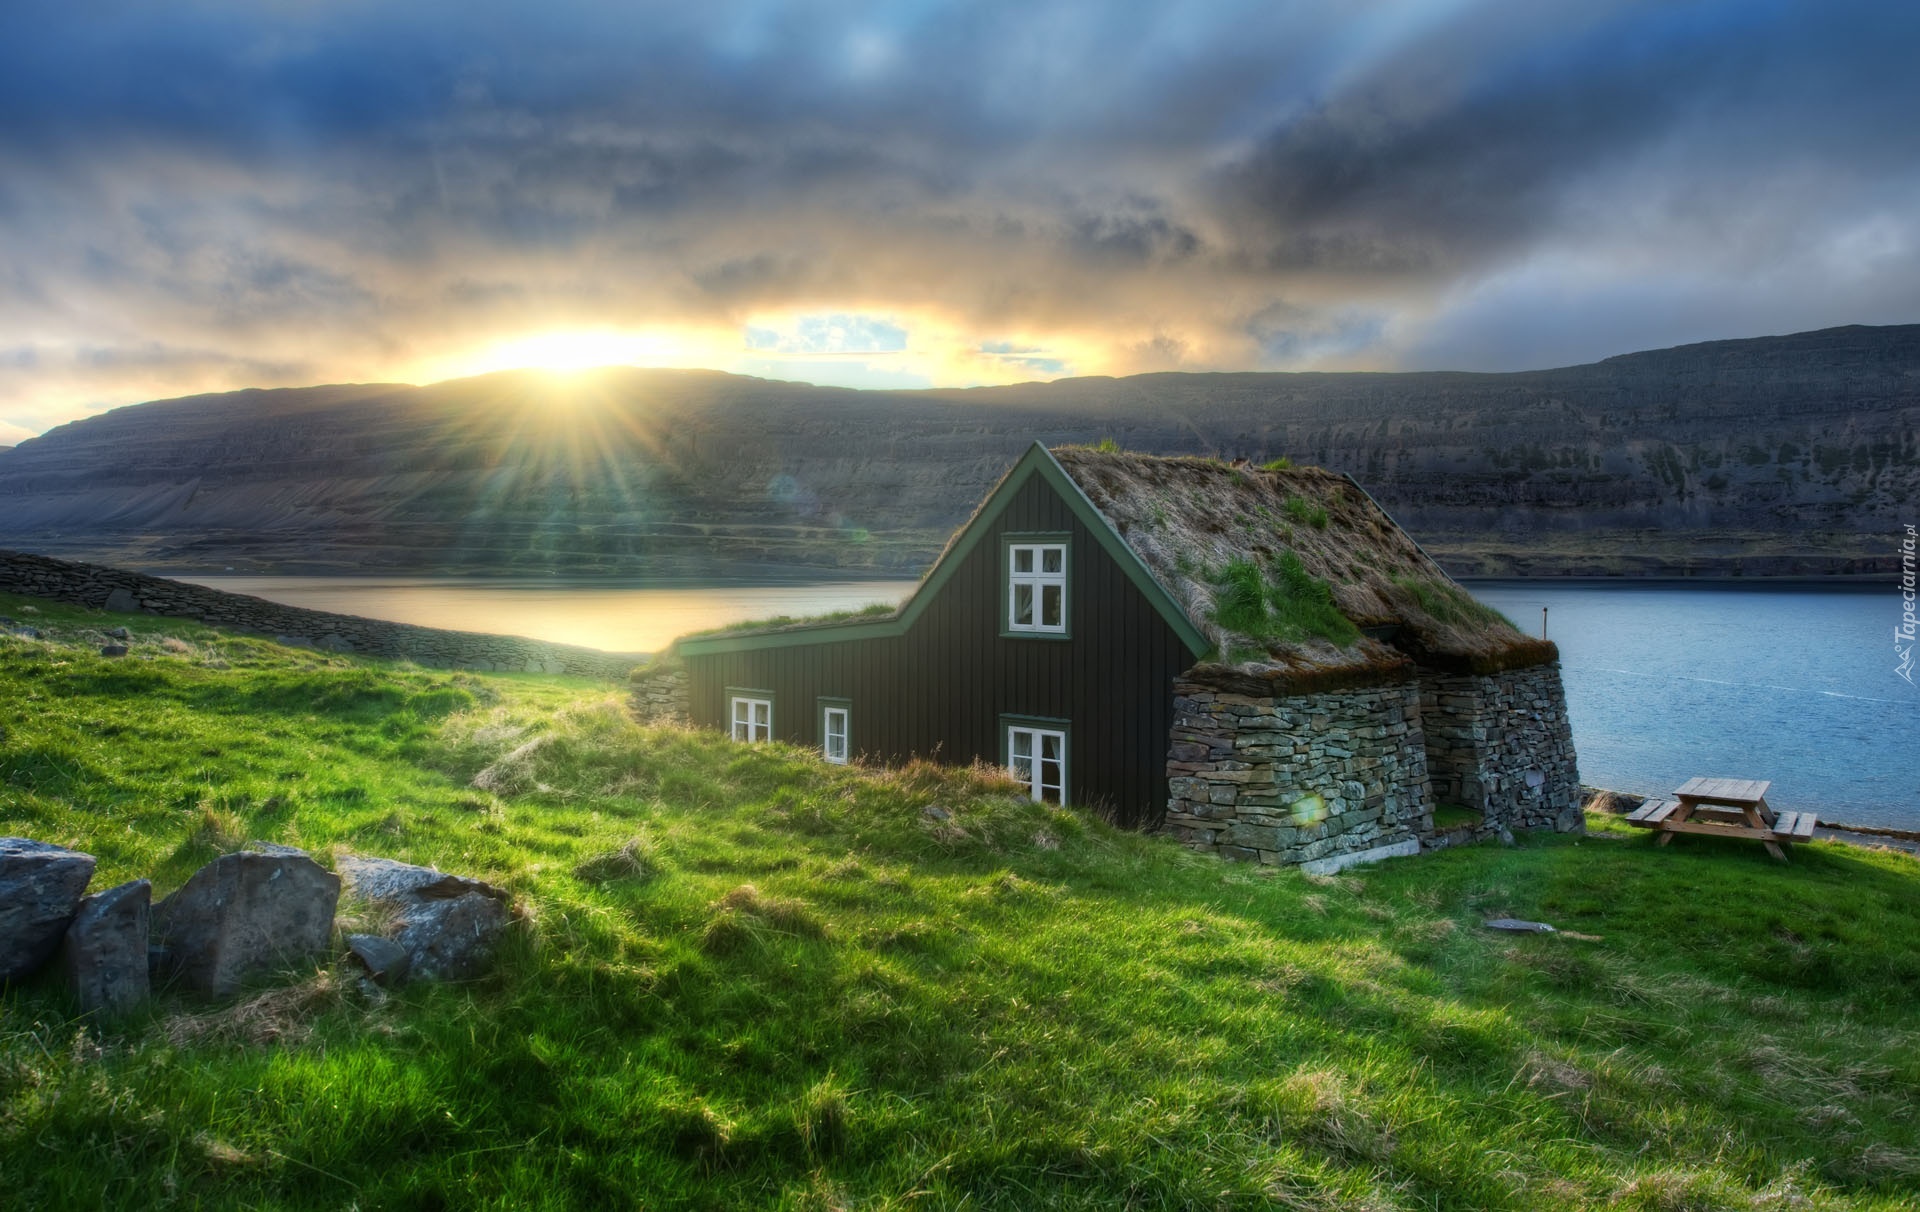 Dom, Rzeka, Góry, Loneley, Islandia